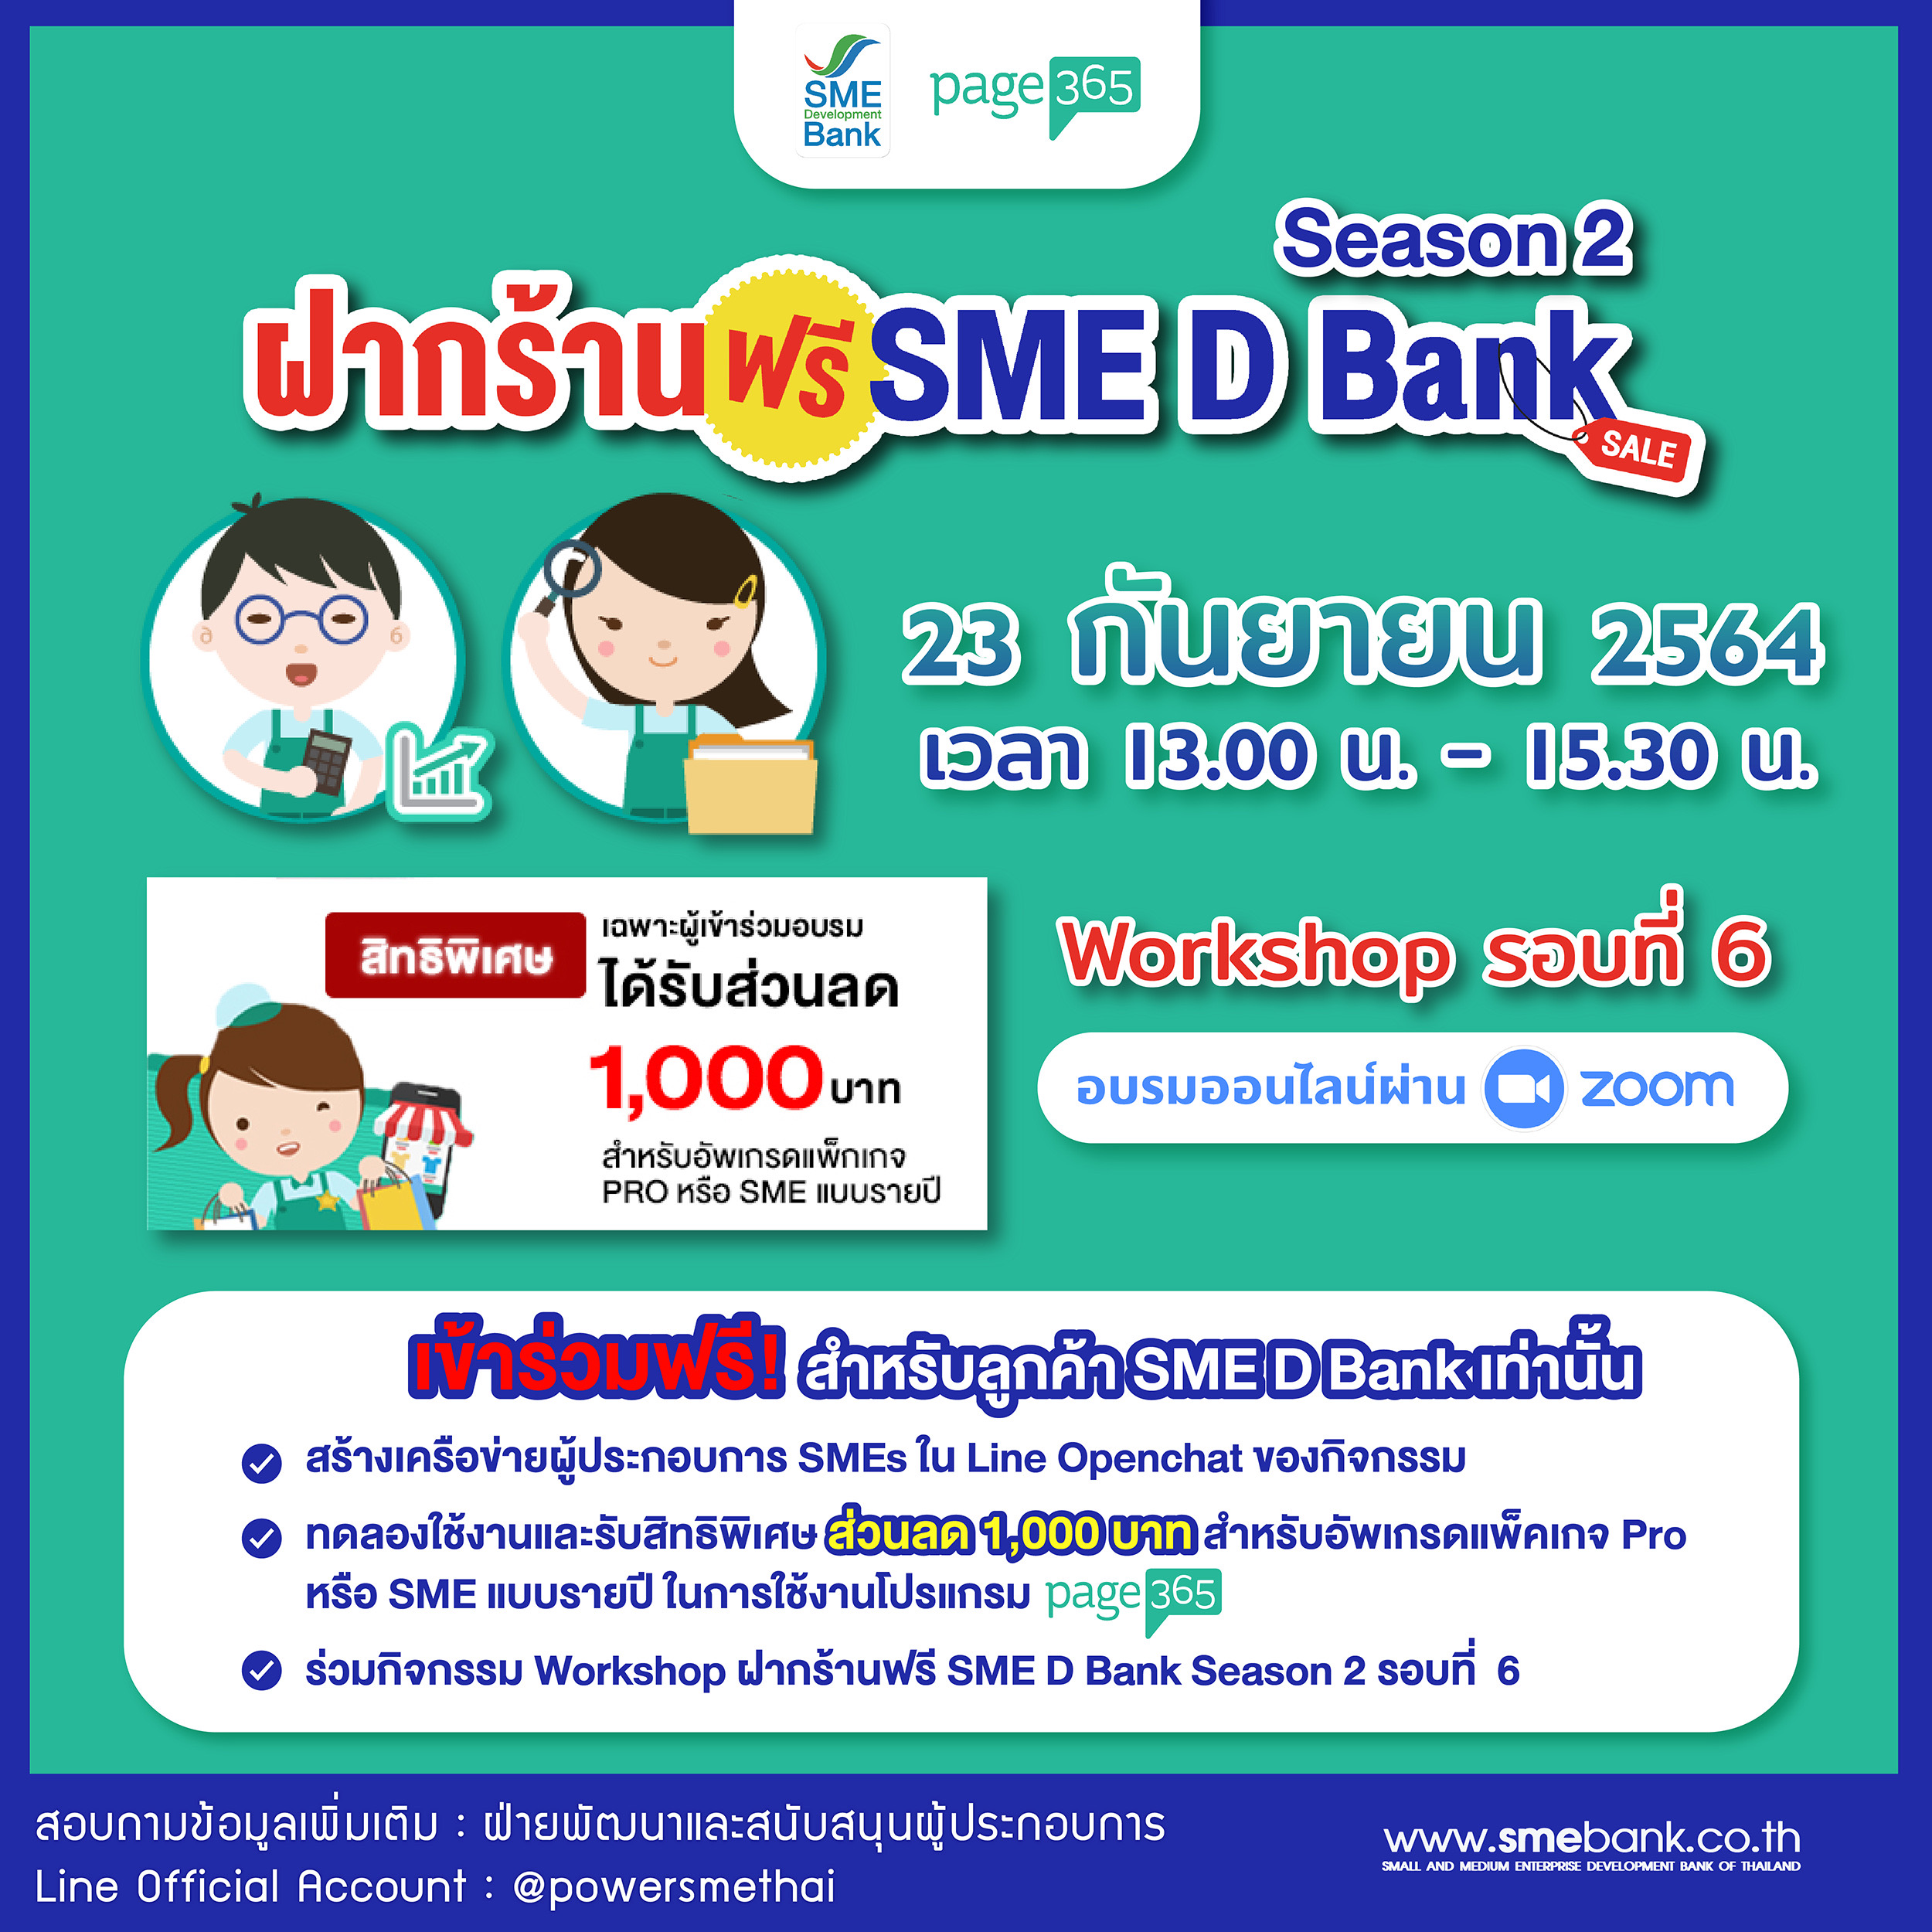 SME D Bank ร่วมกับ Page365 จัดเวิร์คช็อป “ฝากร้านฟรี SME D Bank Season 2” ช่วยเอสเอ็มอีดันยอดขายเติบโตด้วยออนไลน์